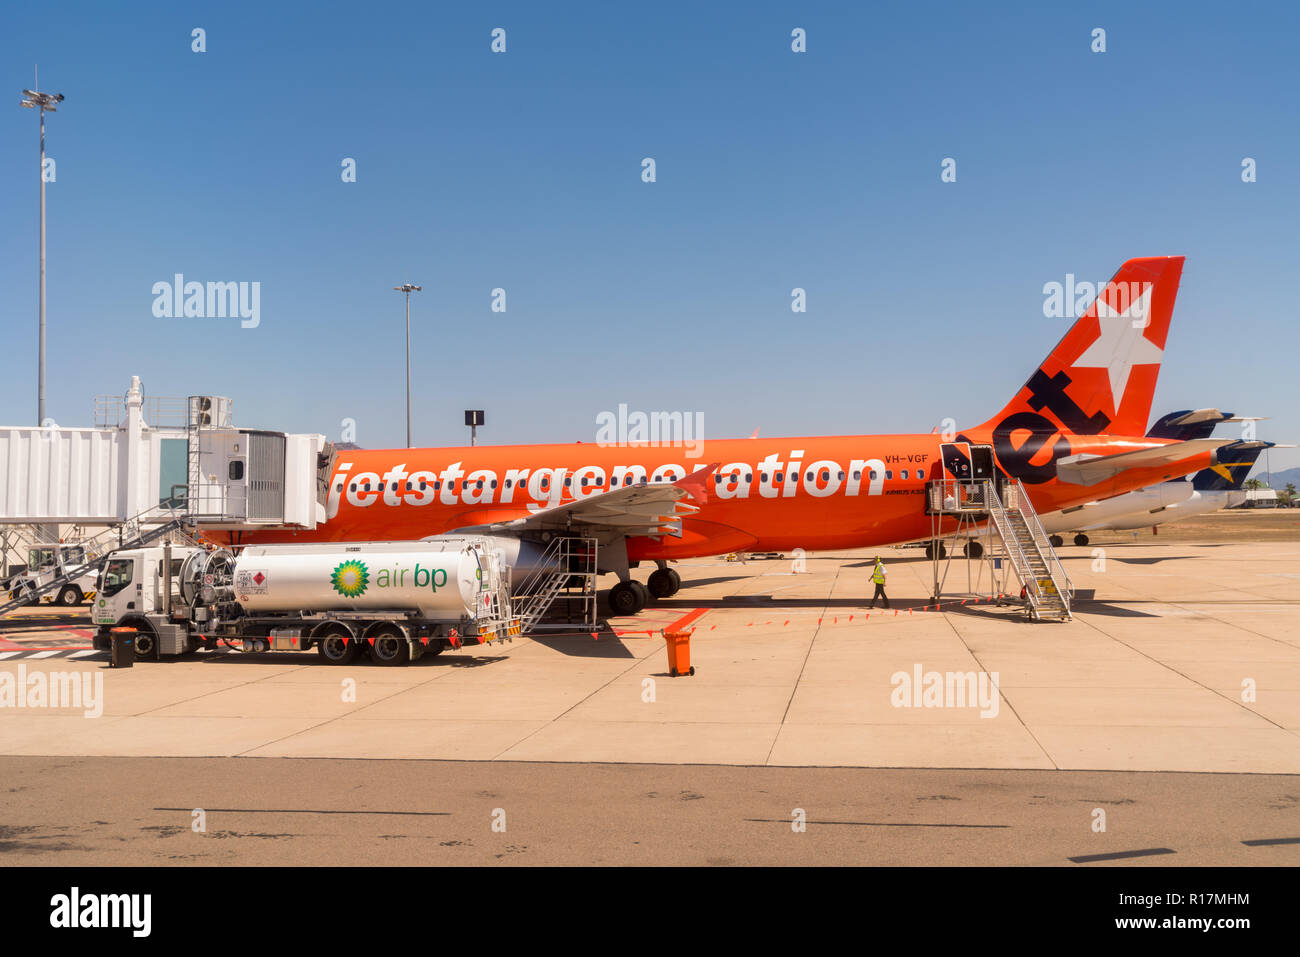 Ein Jetstar-Flugzeug wird an einem heißen Tag am Townsville Airport, Queensland, QLD, Australien von Air BP betankt. Stockfoto